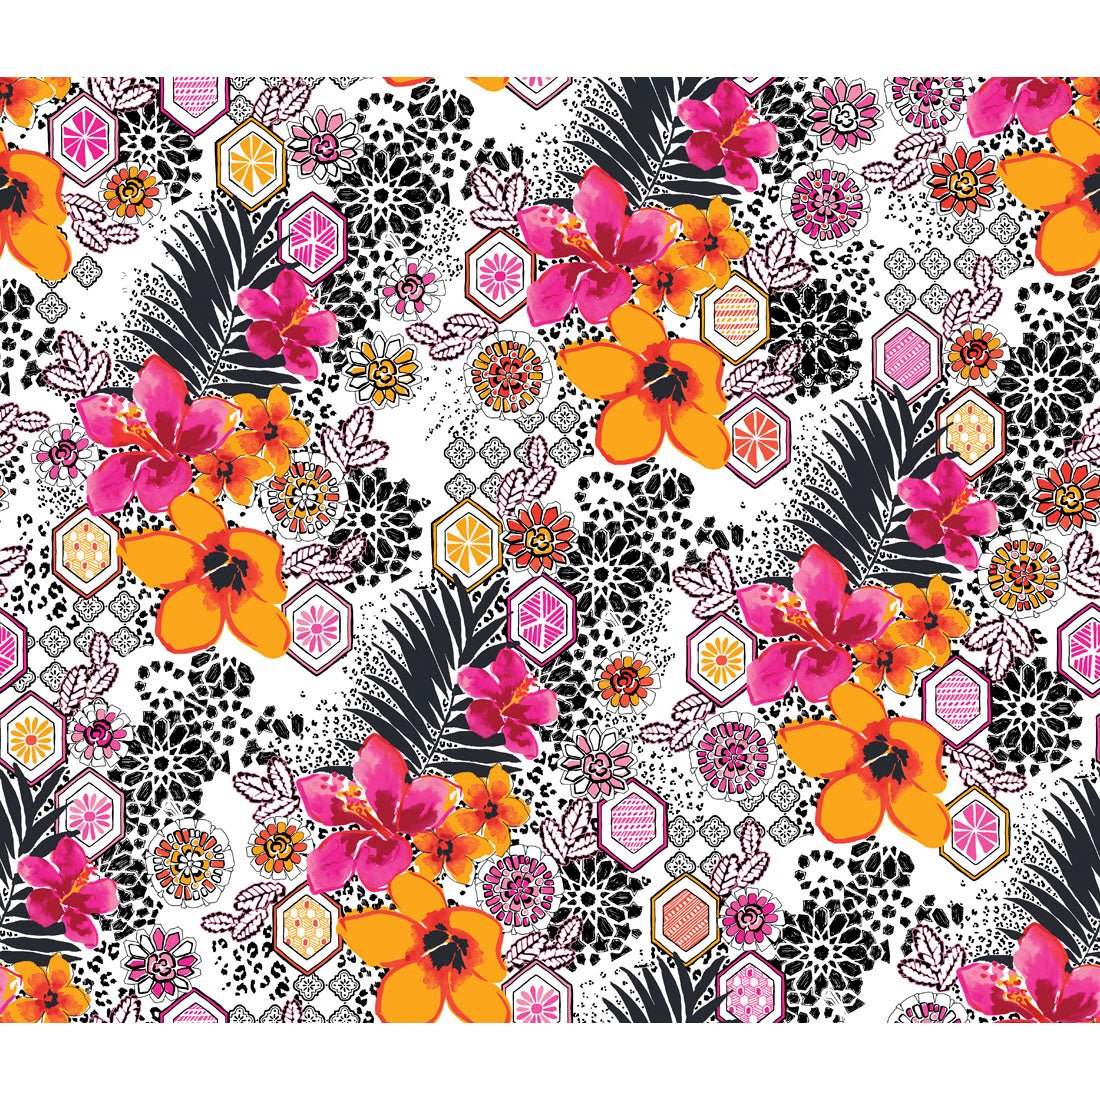 Floral Print V Neck Scrub Top DK708 LEJU - Scrubs Select